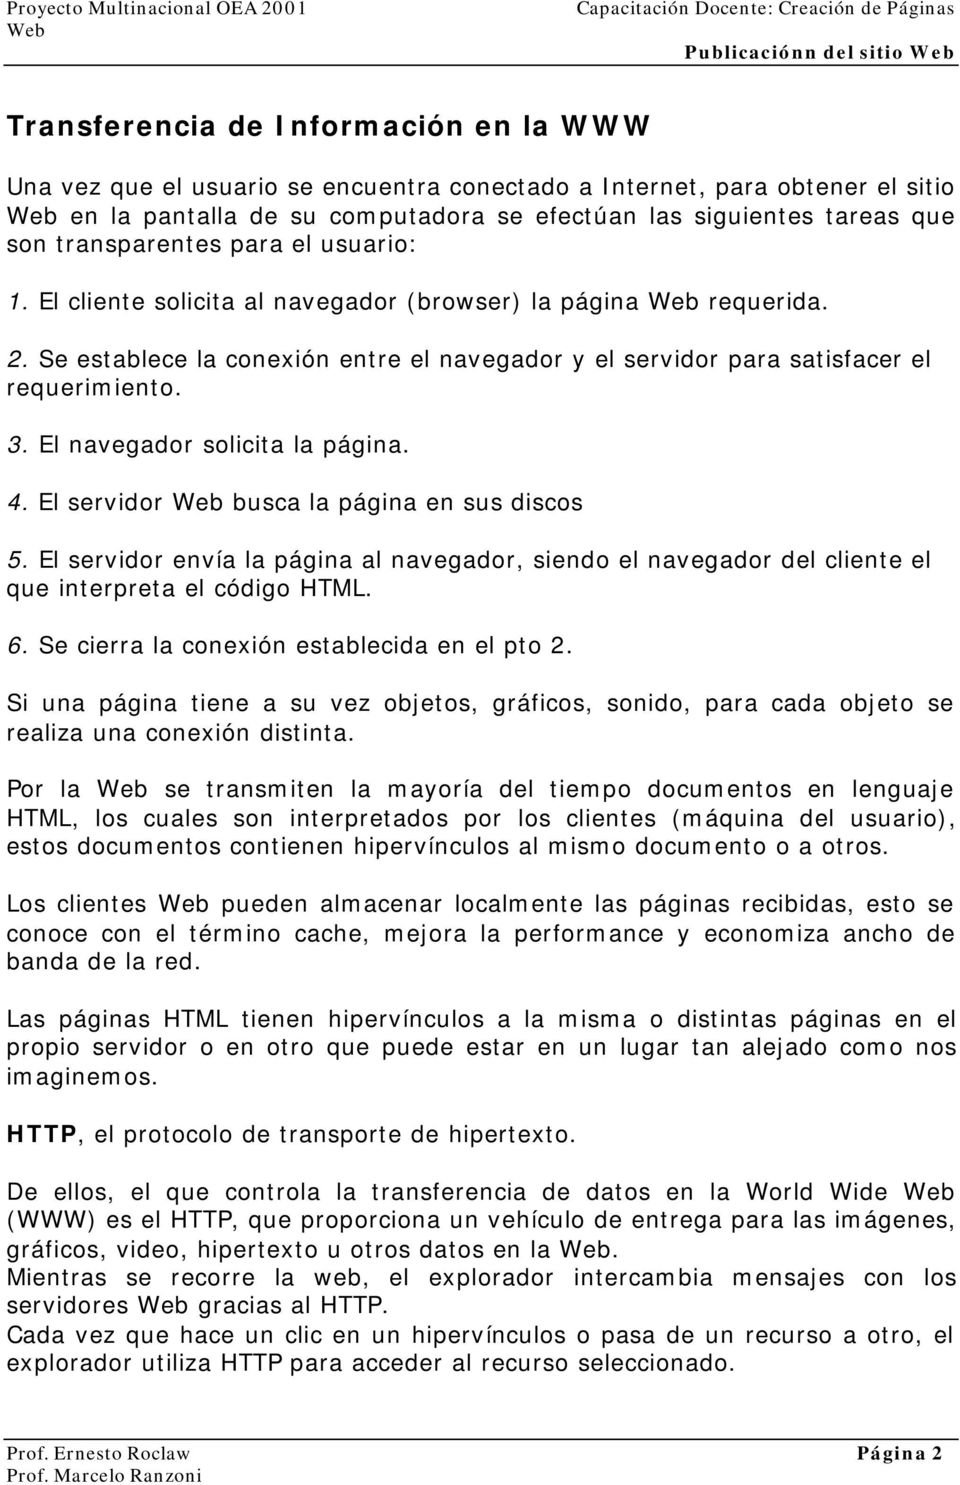 El navegador solicita la página. 4. El servidor busca la página en sus discos 5. El servidor envía la página al navegador, siendo el navegador del cliente el que interpreta el código HTML. 6.